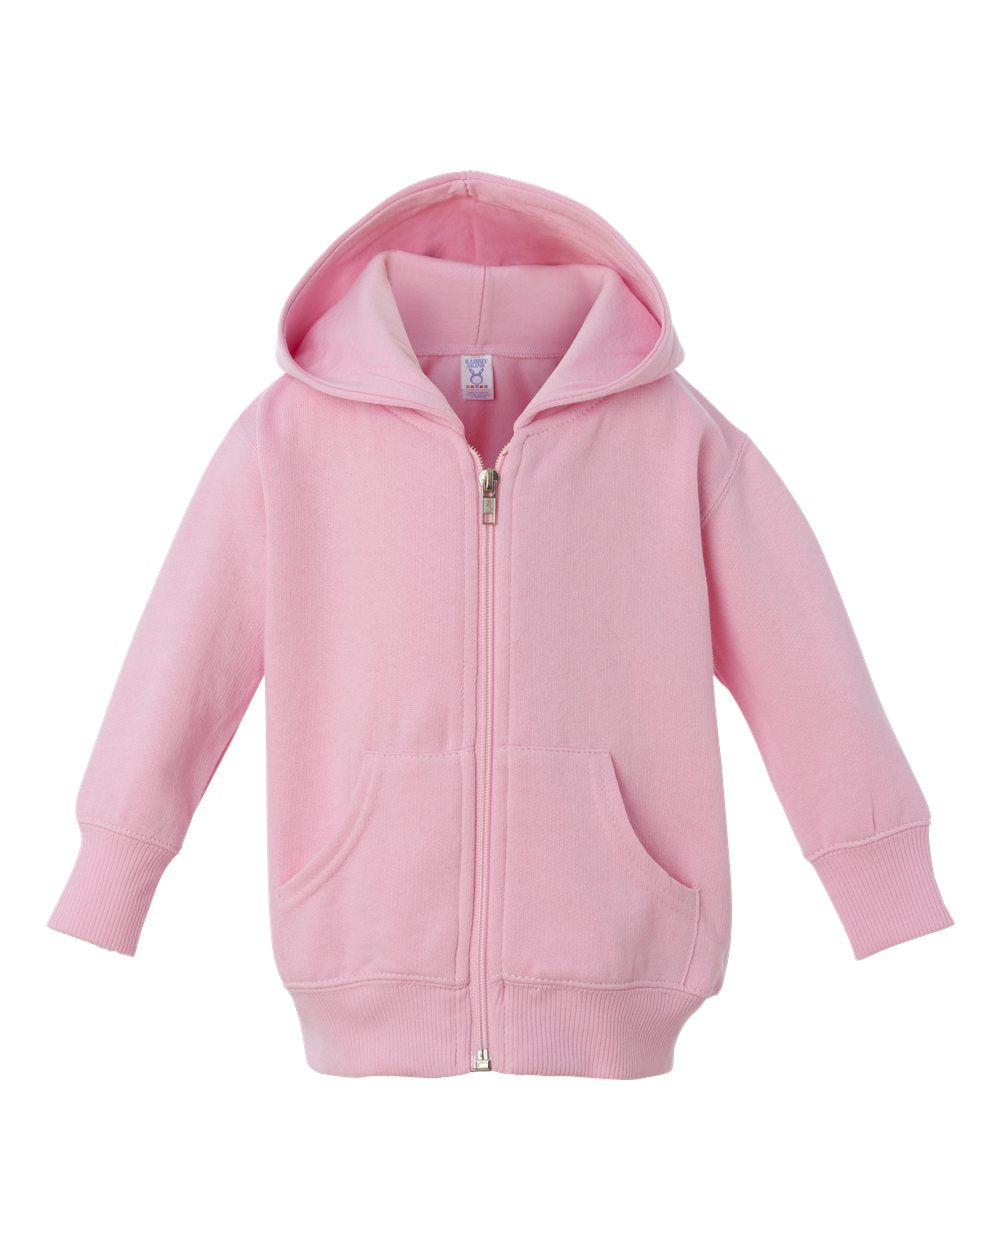 rabbit skins infant full zip fleece hoodie pink